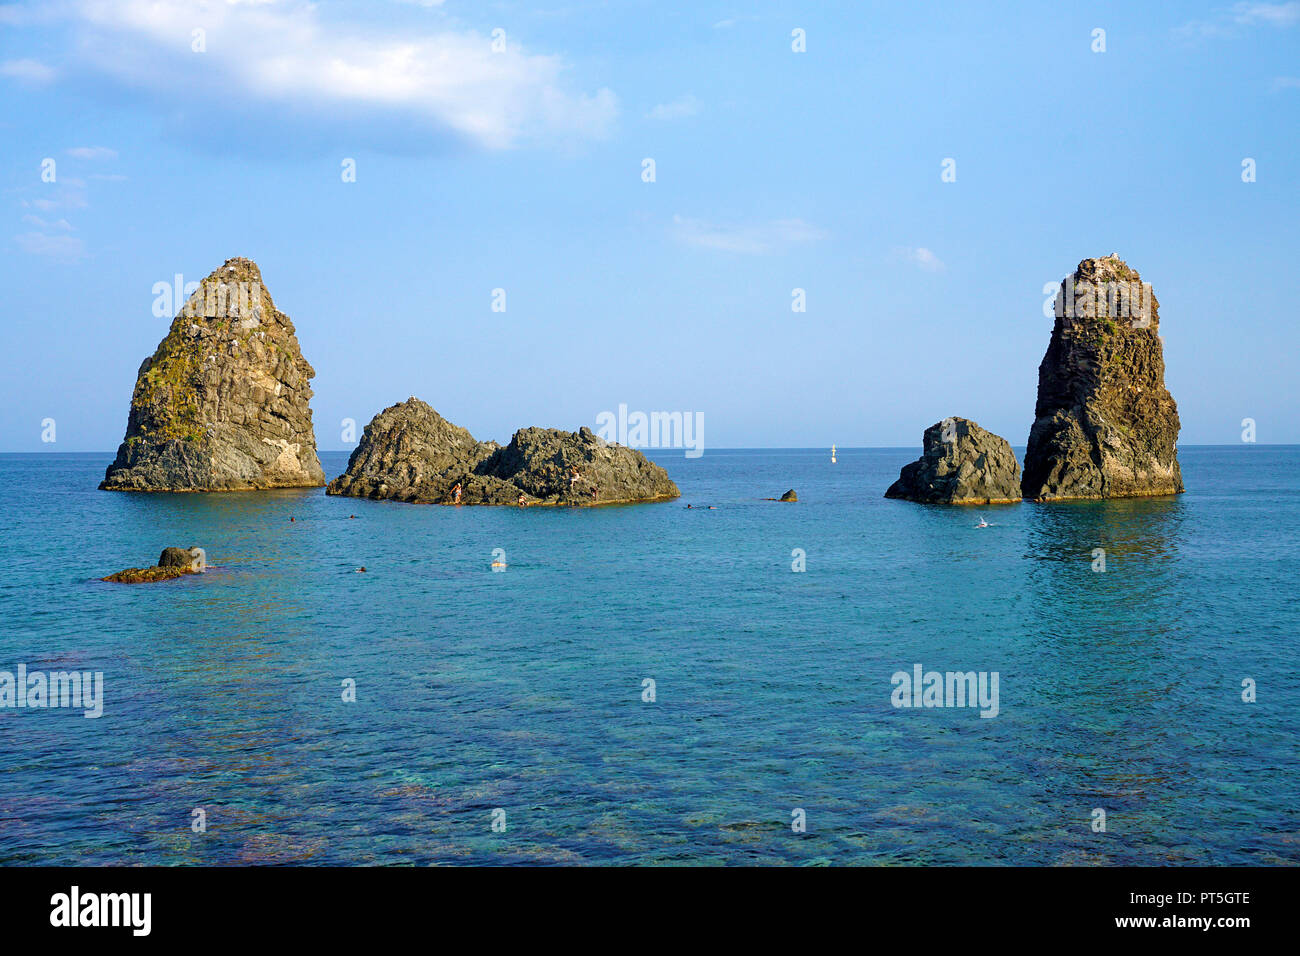 Le isole dei ciclopi al villaggio di pescatori di Aci Trezza, comune di Aci Castello, Catania, Sicilia, Italia Foto Stock